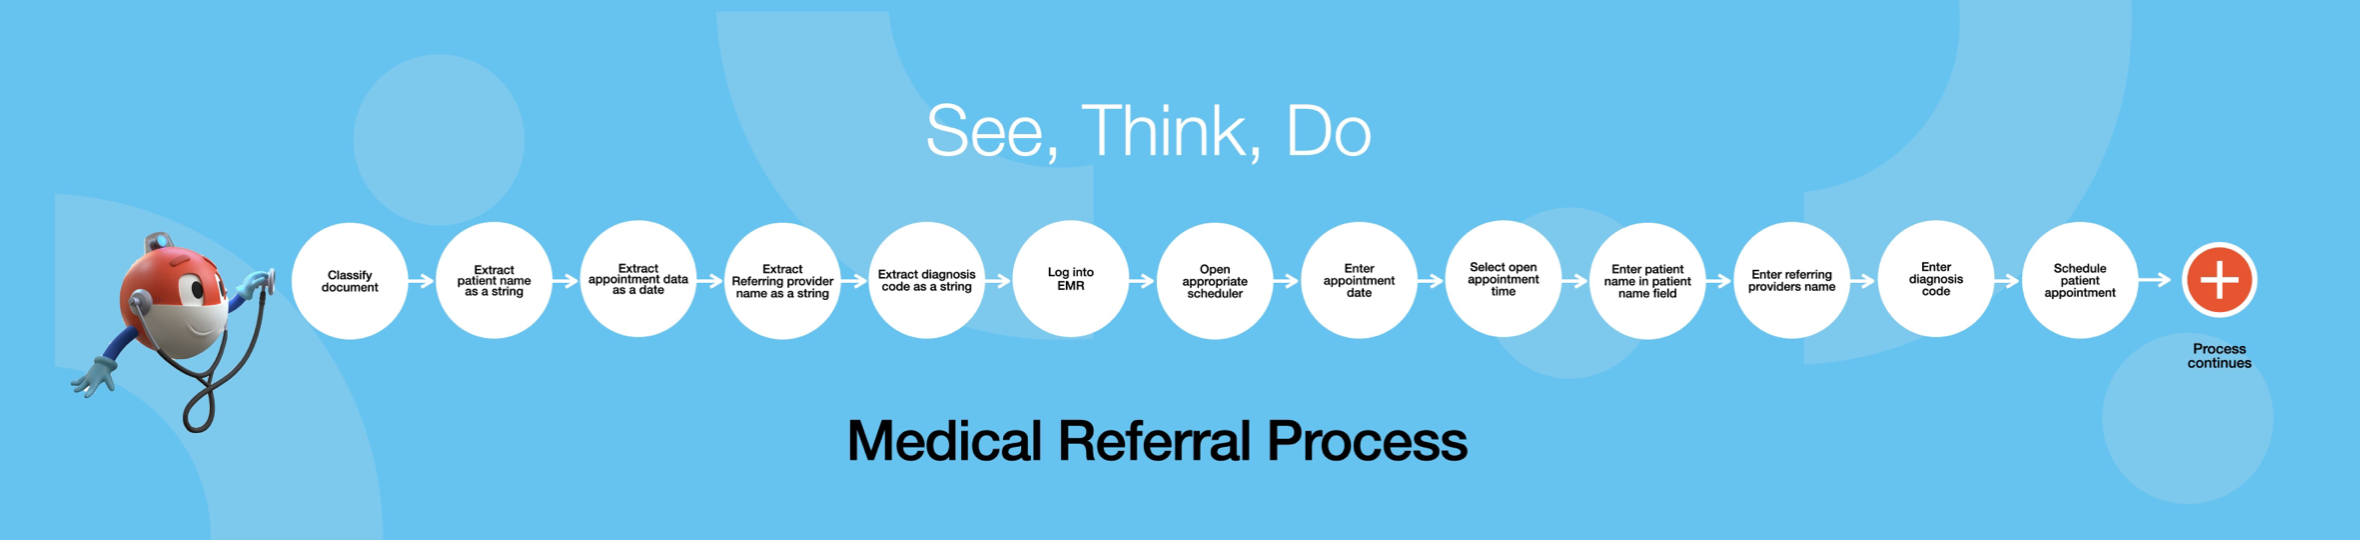 medical referral process daniel dines keynote uipath forward 2021